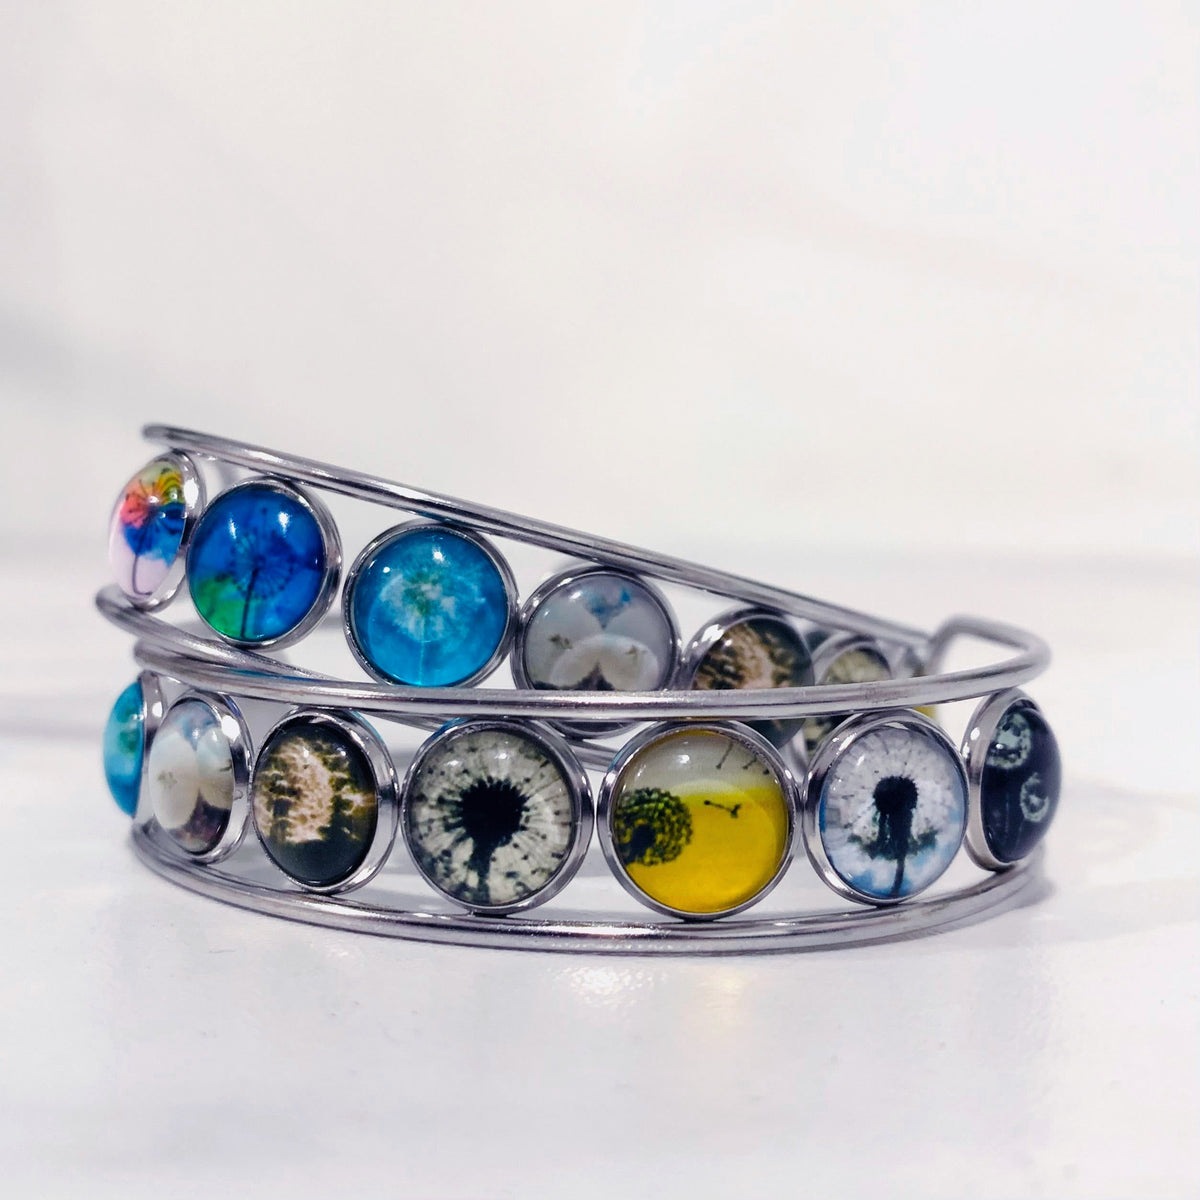 Artistic Cuff Bracelet Jewelry - 